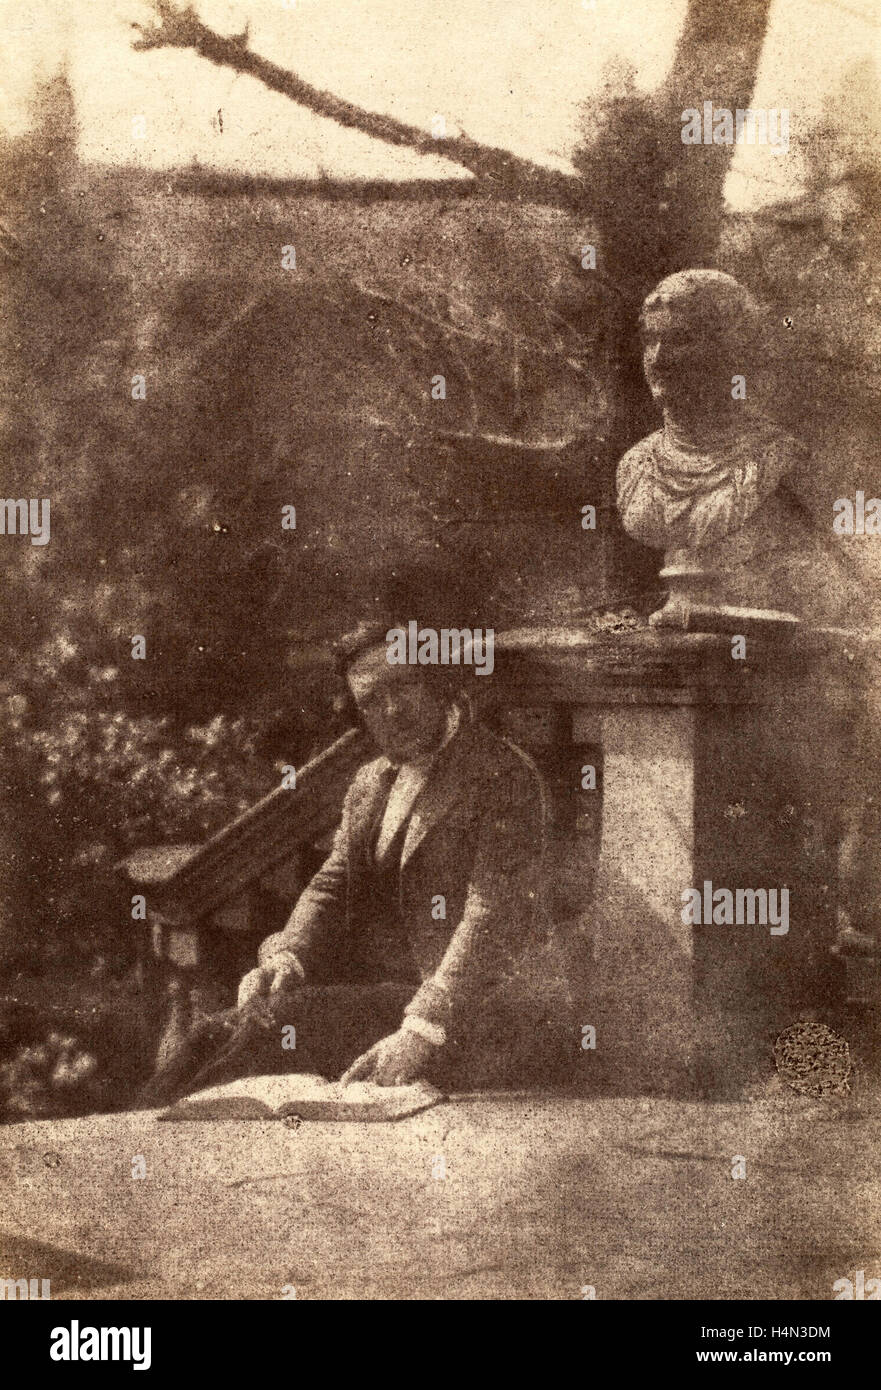 La 19e siècle, l'homme avec buste classique, 1840, sur papier salé imprimer à partir d'un négatif papier Banque D'Images